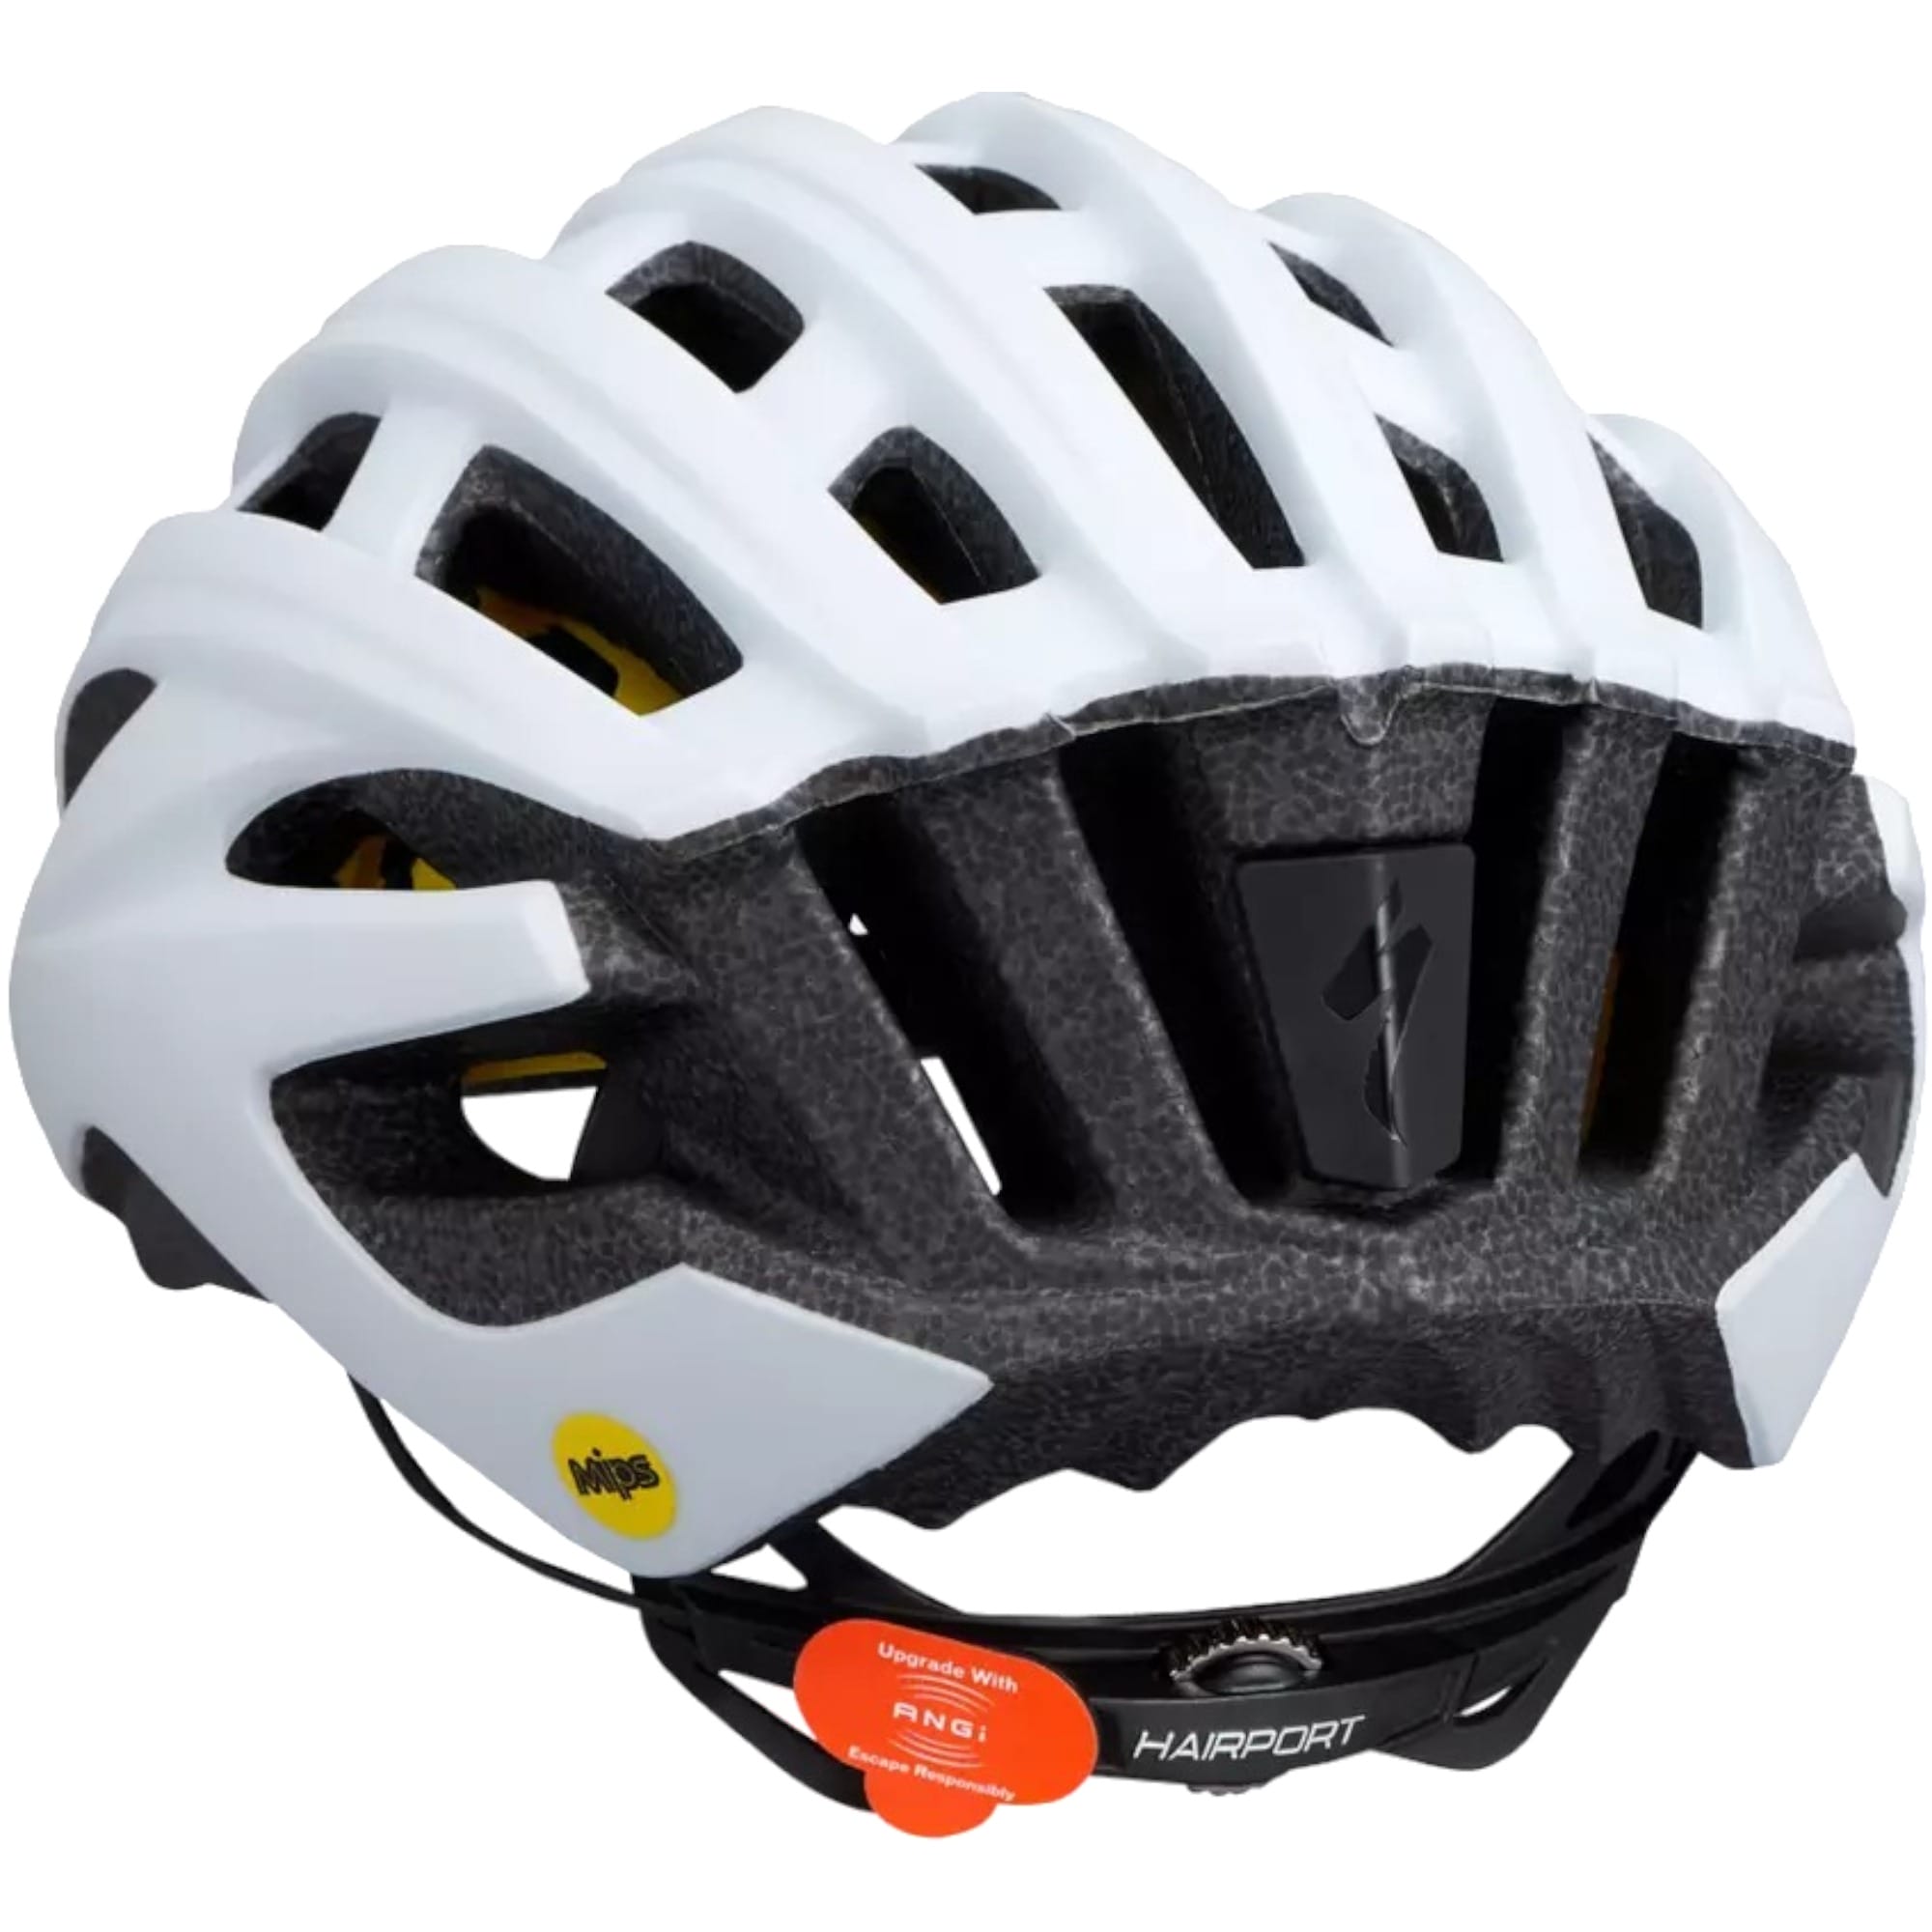 Propero III ANGi Mips Adult Bike Helmet